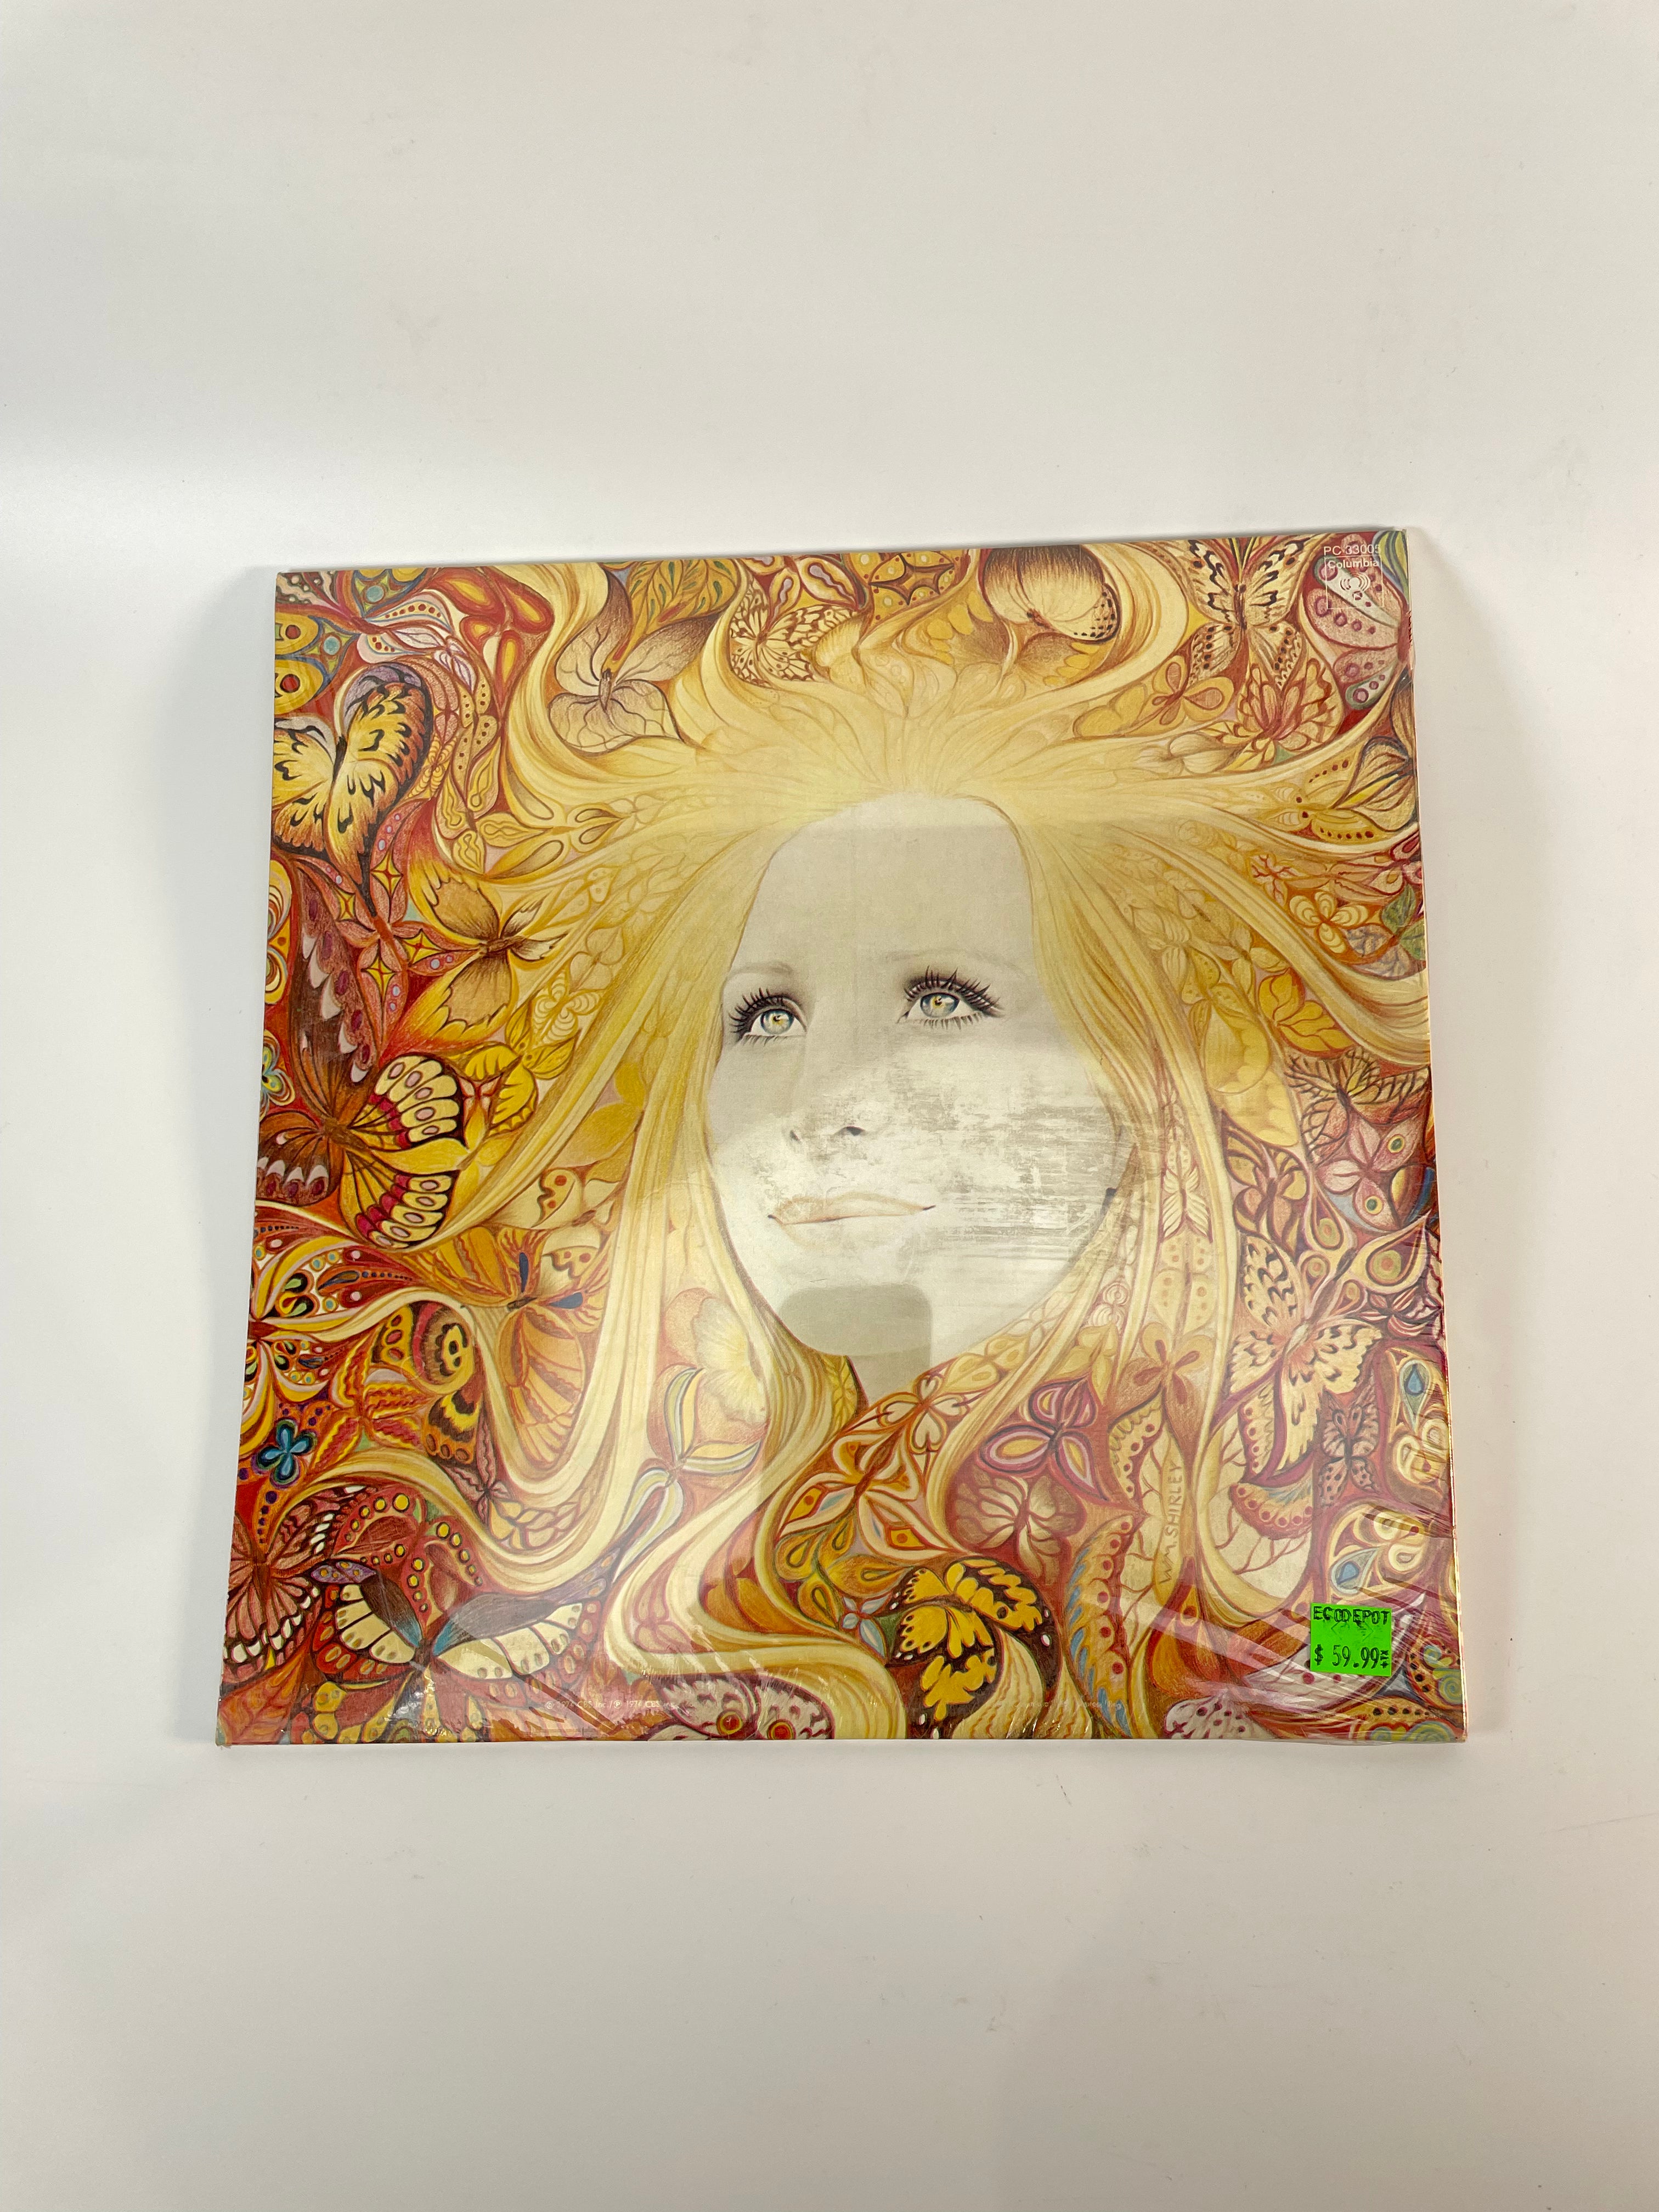 Sealed Barbra Streisand Butterfly Stereo LP - Vinyl